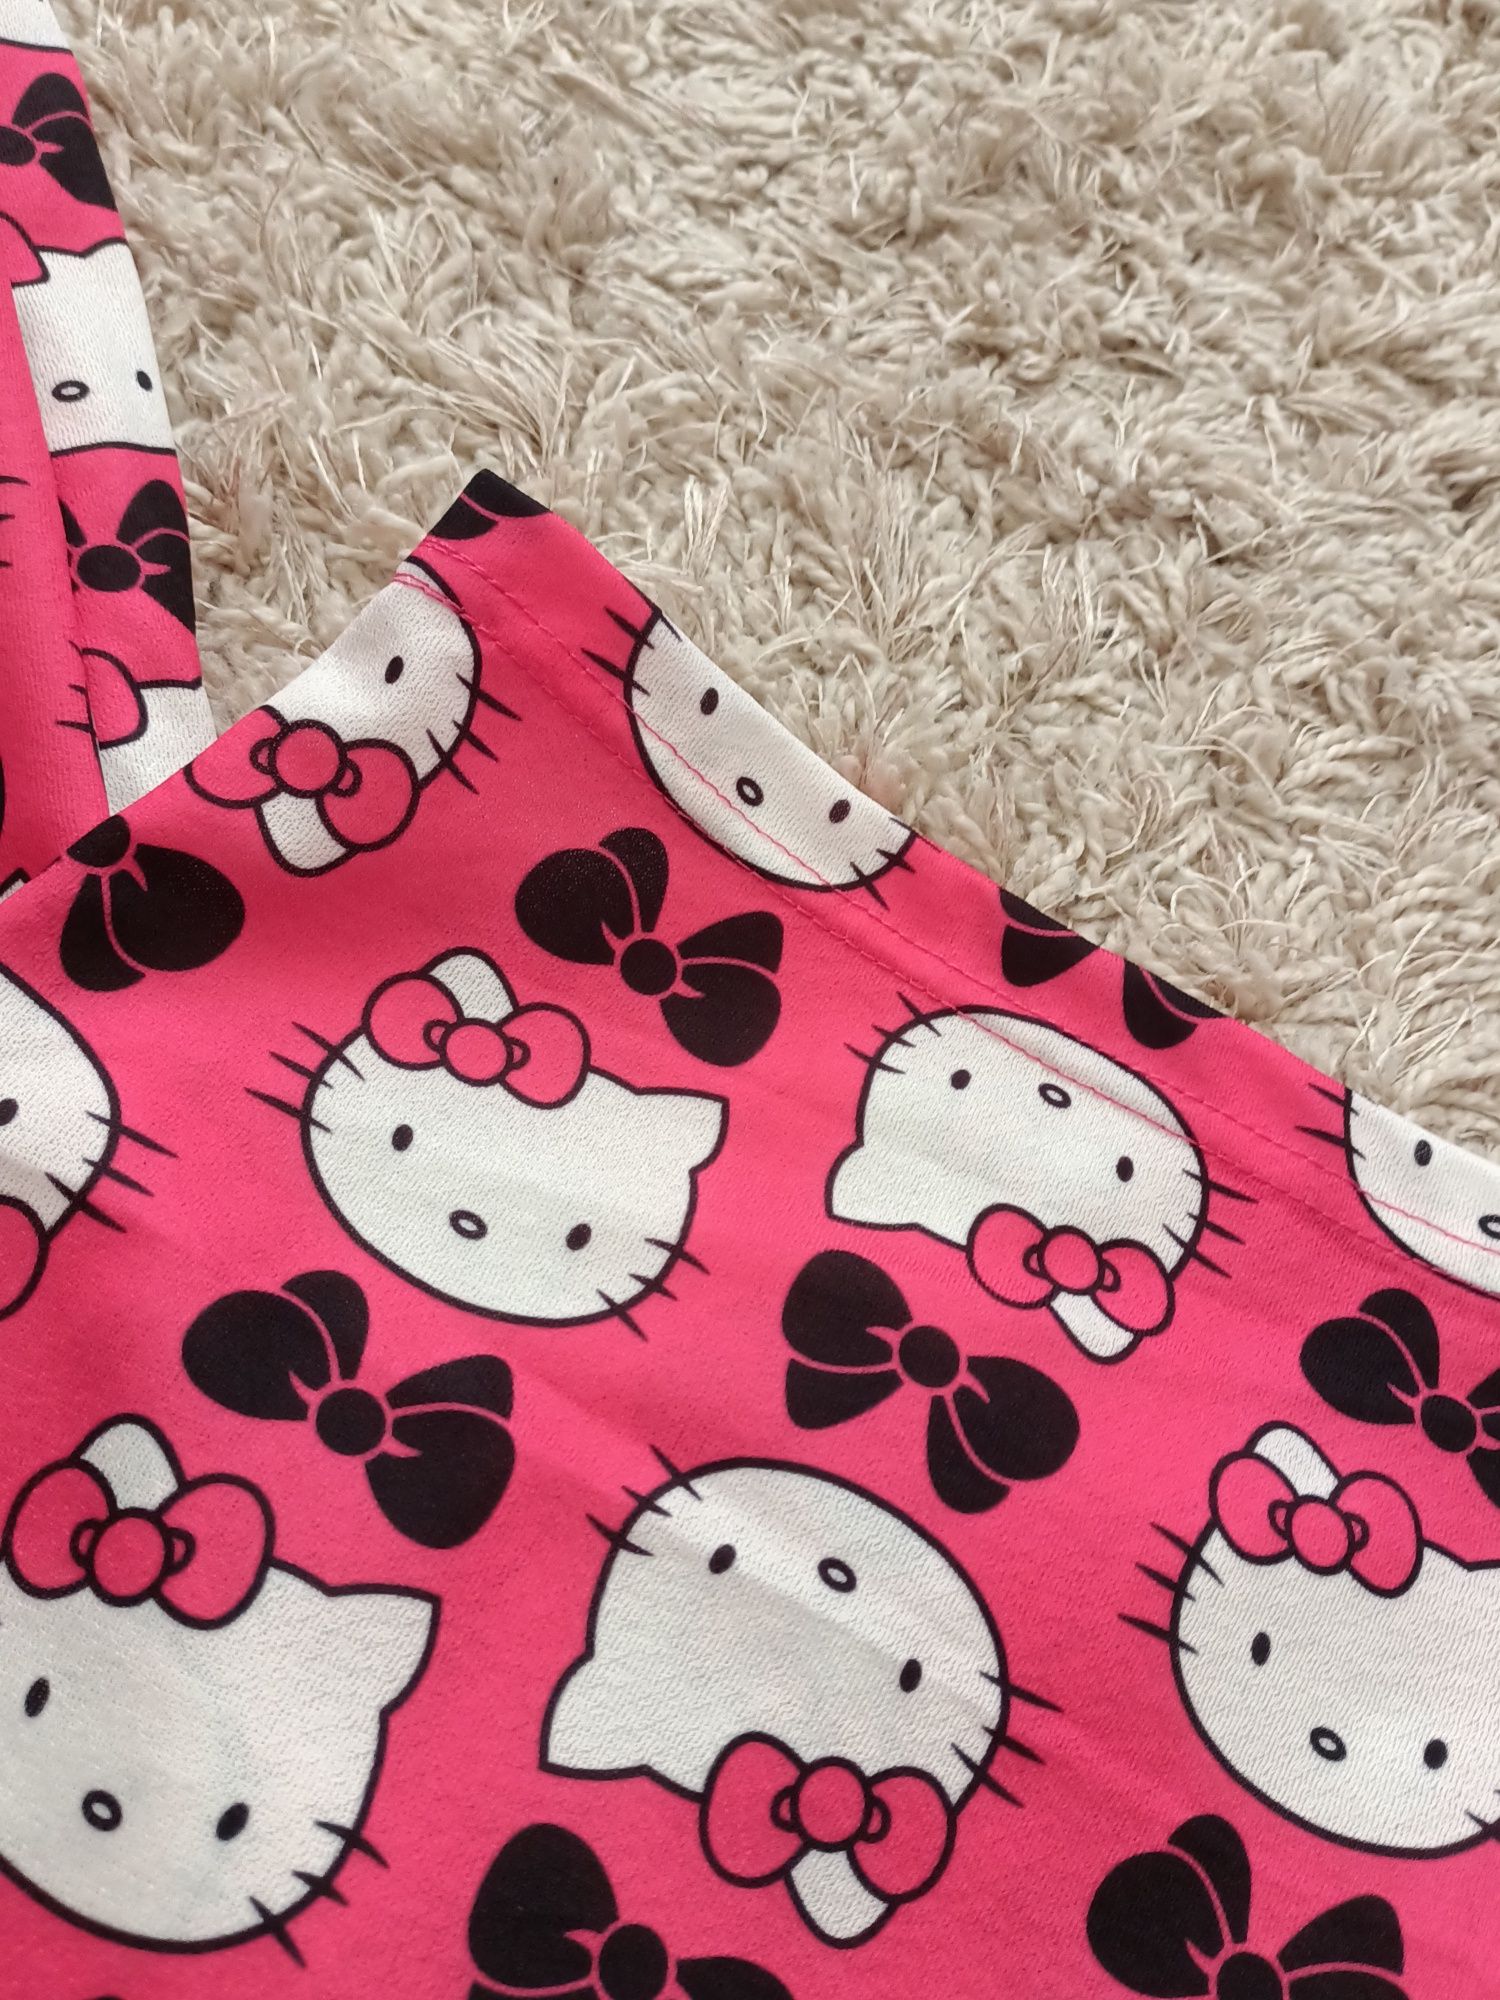 Spodnie piżamowe piżama hello kitty materiałowe różowe czerwone S M L